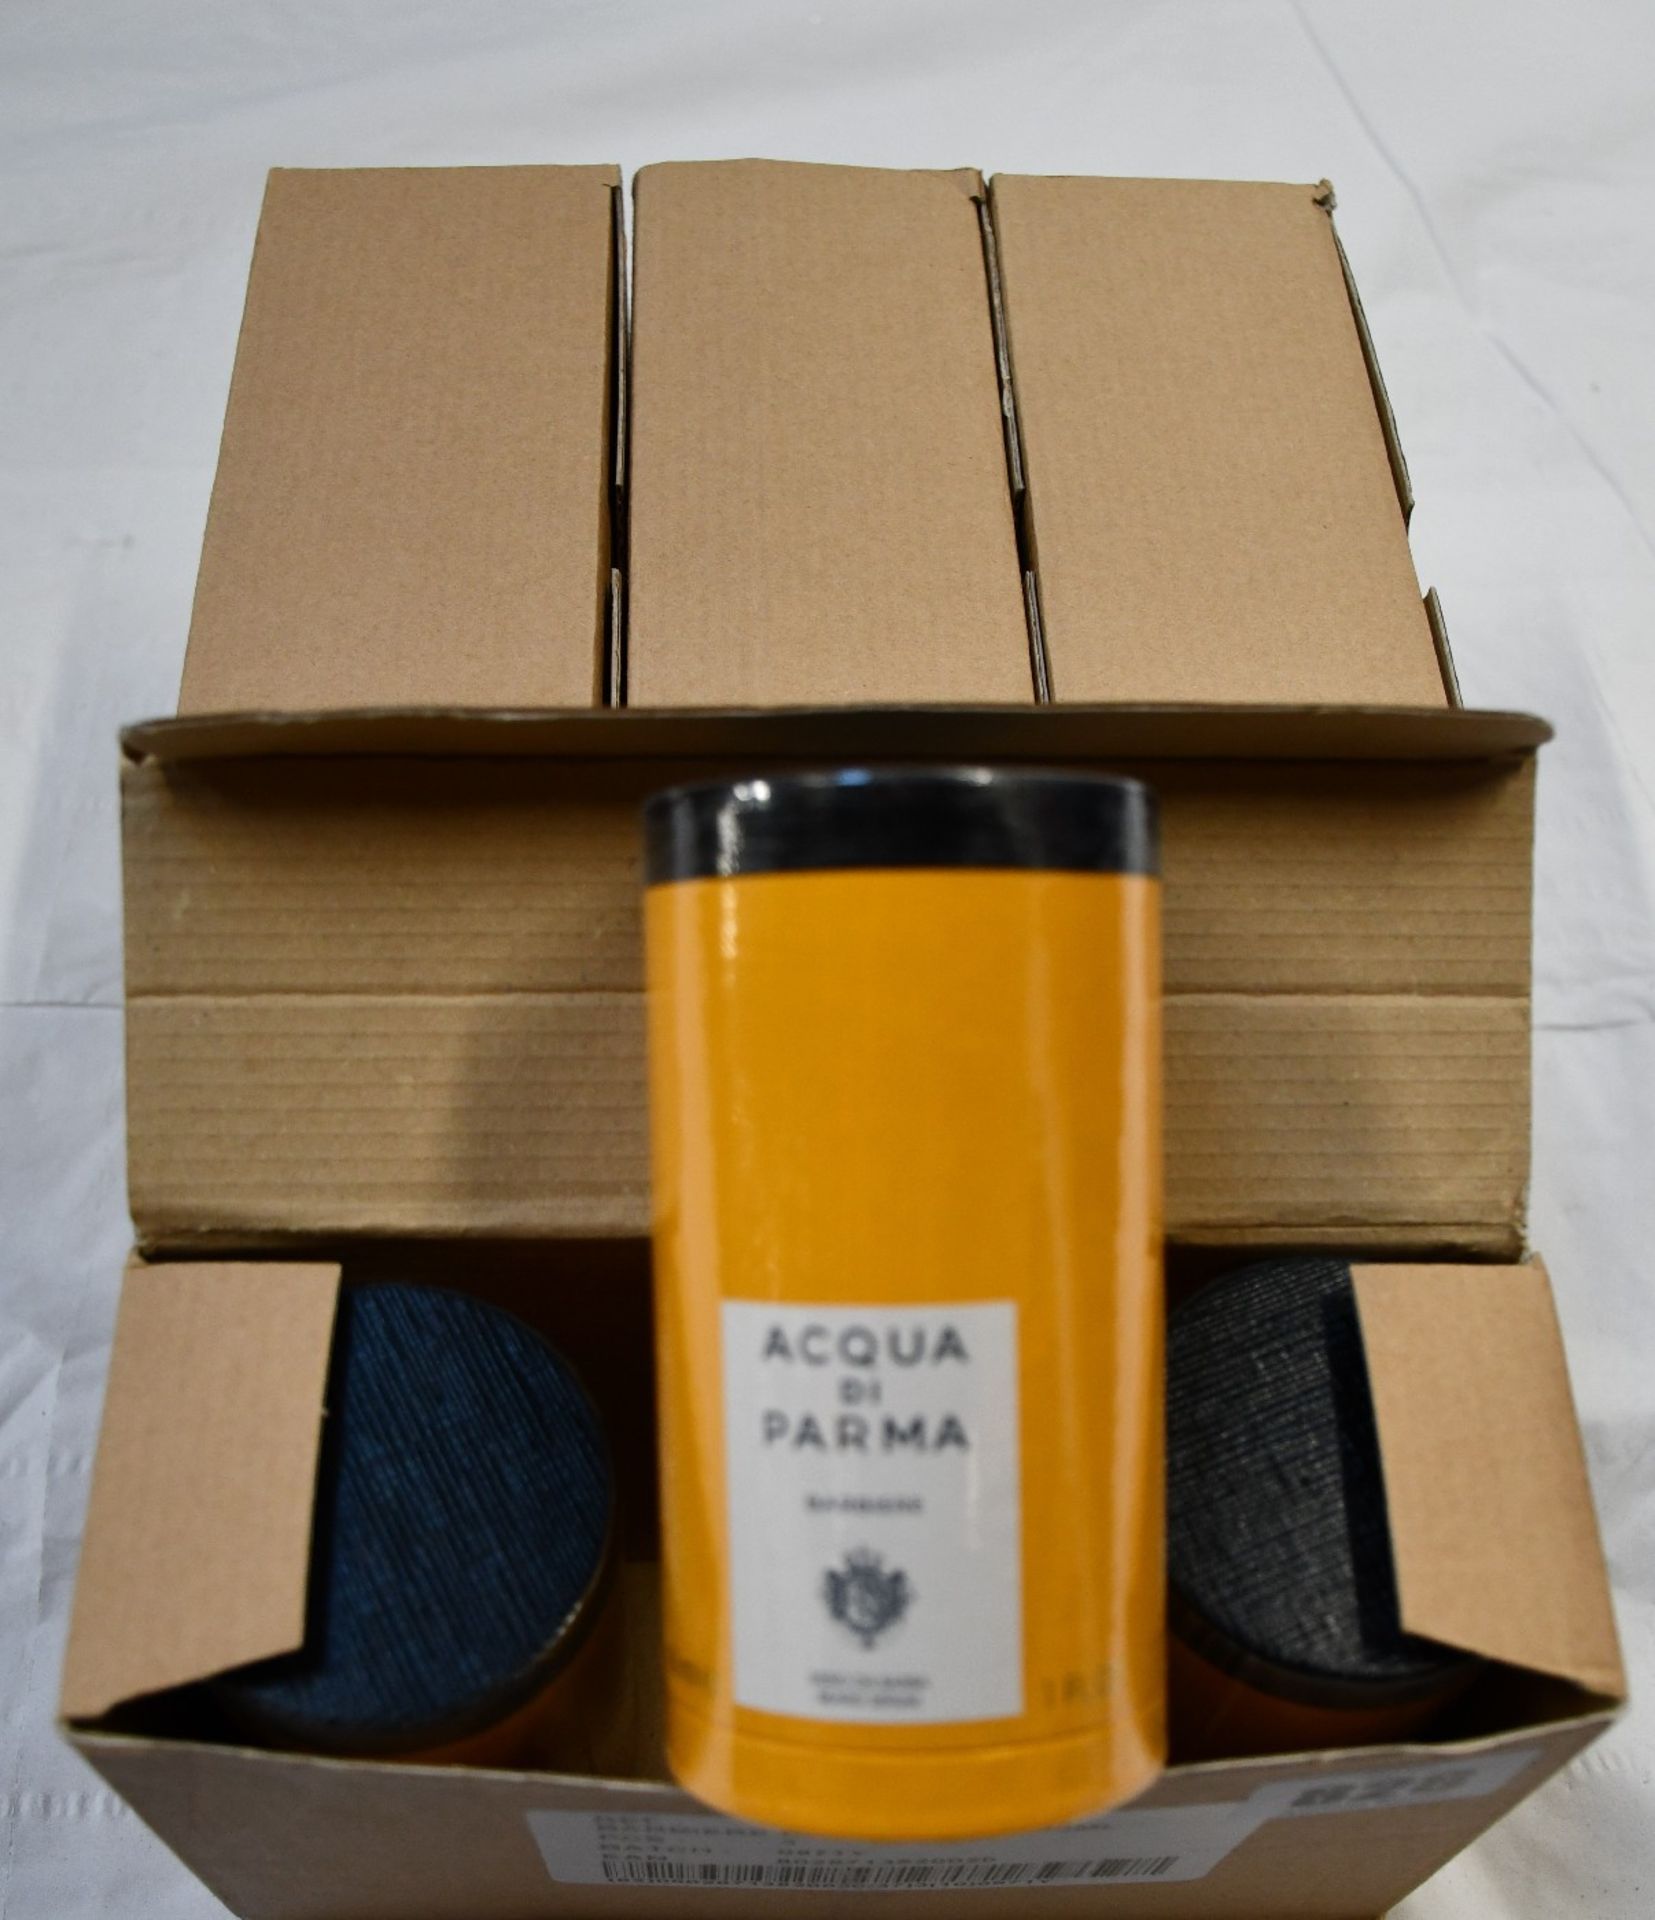 Twelve Acqua Di Parma Barbiere beard serum (12 x 30ml).